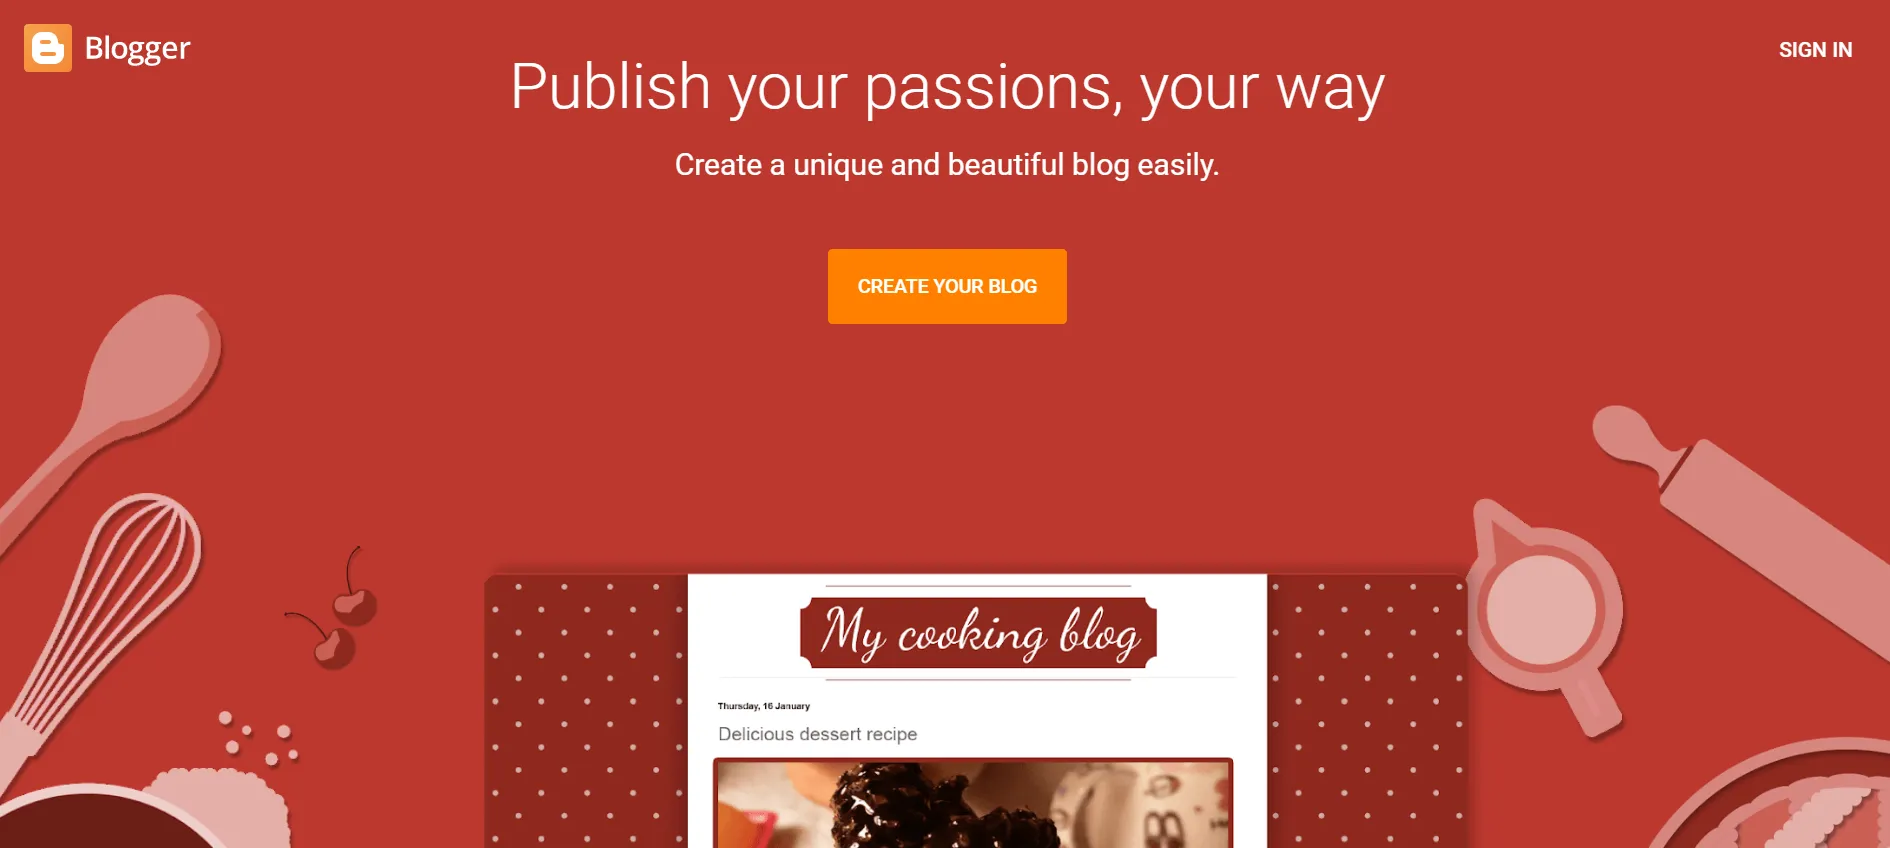 Best blogging platform to make money Blogger